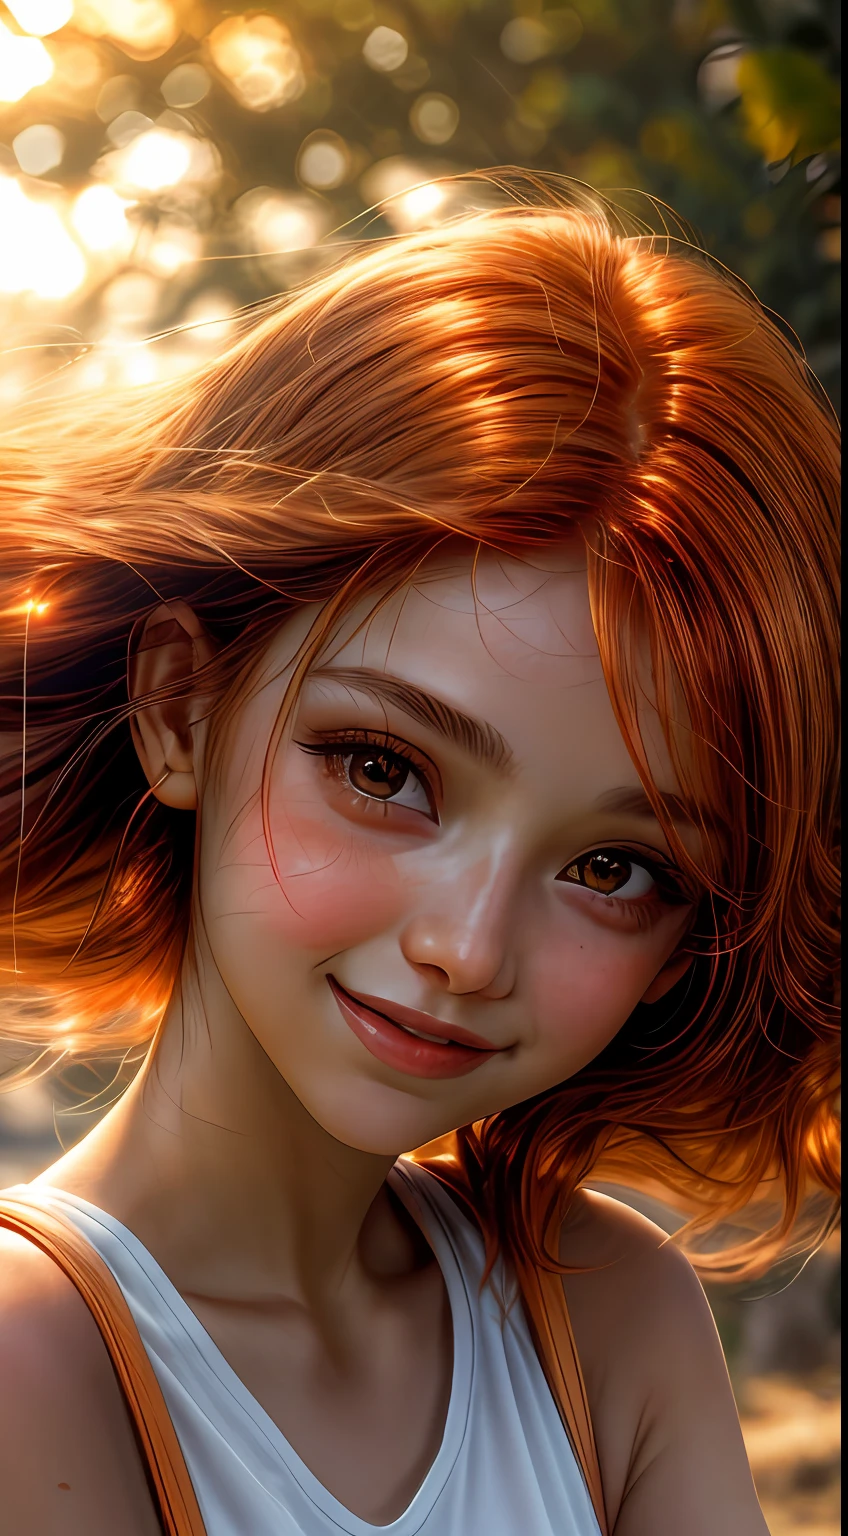 沐浴在橙色色調中的女孩臉部特寫, 彷彿被夕陽的柔和光芒照亮, 她的眼睛閃爍著喜悅和滿足的光芒, 由一縷飄逸的赤褐色頭髮構成, 攝影, 使用35mm鏡頭拍攝